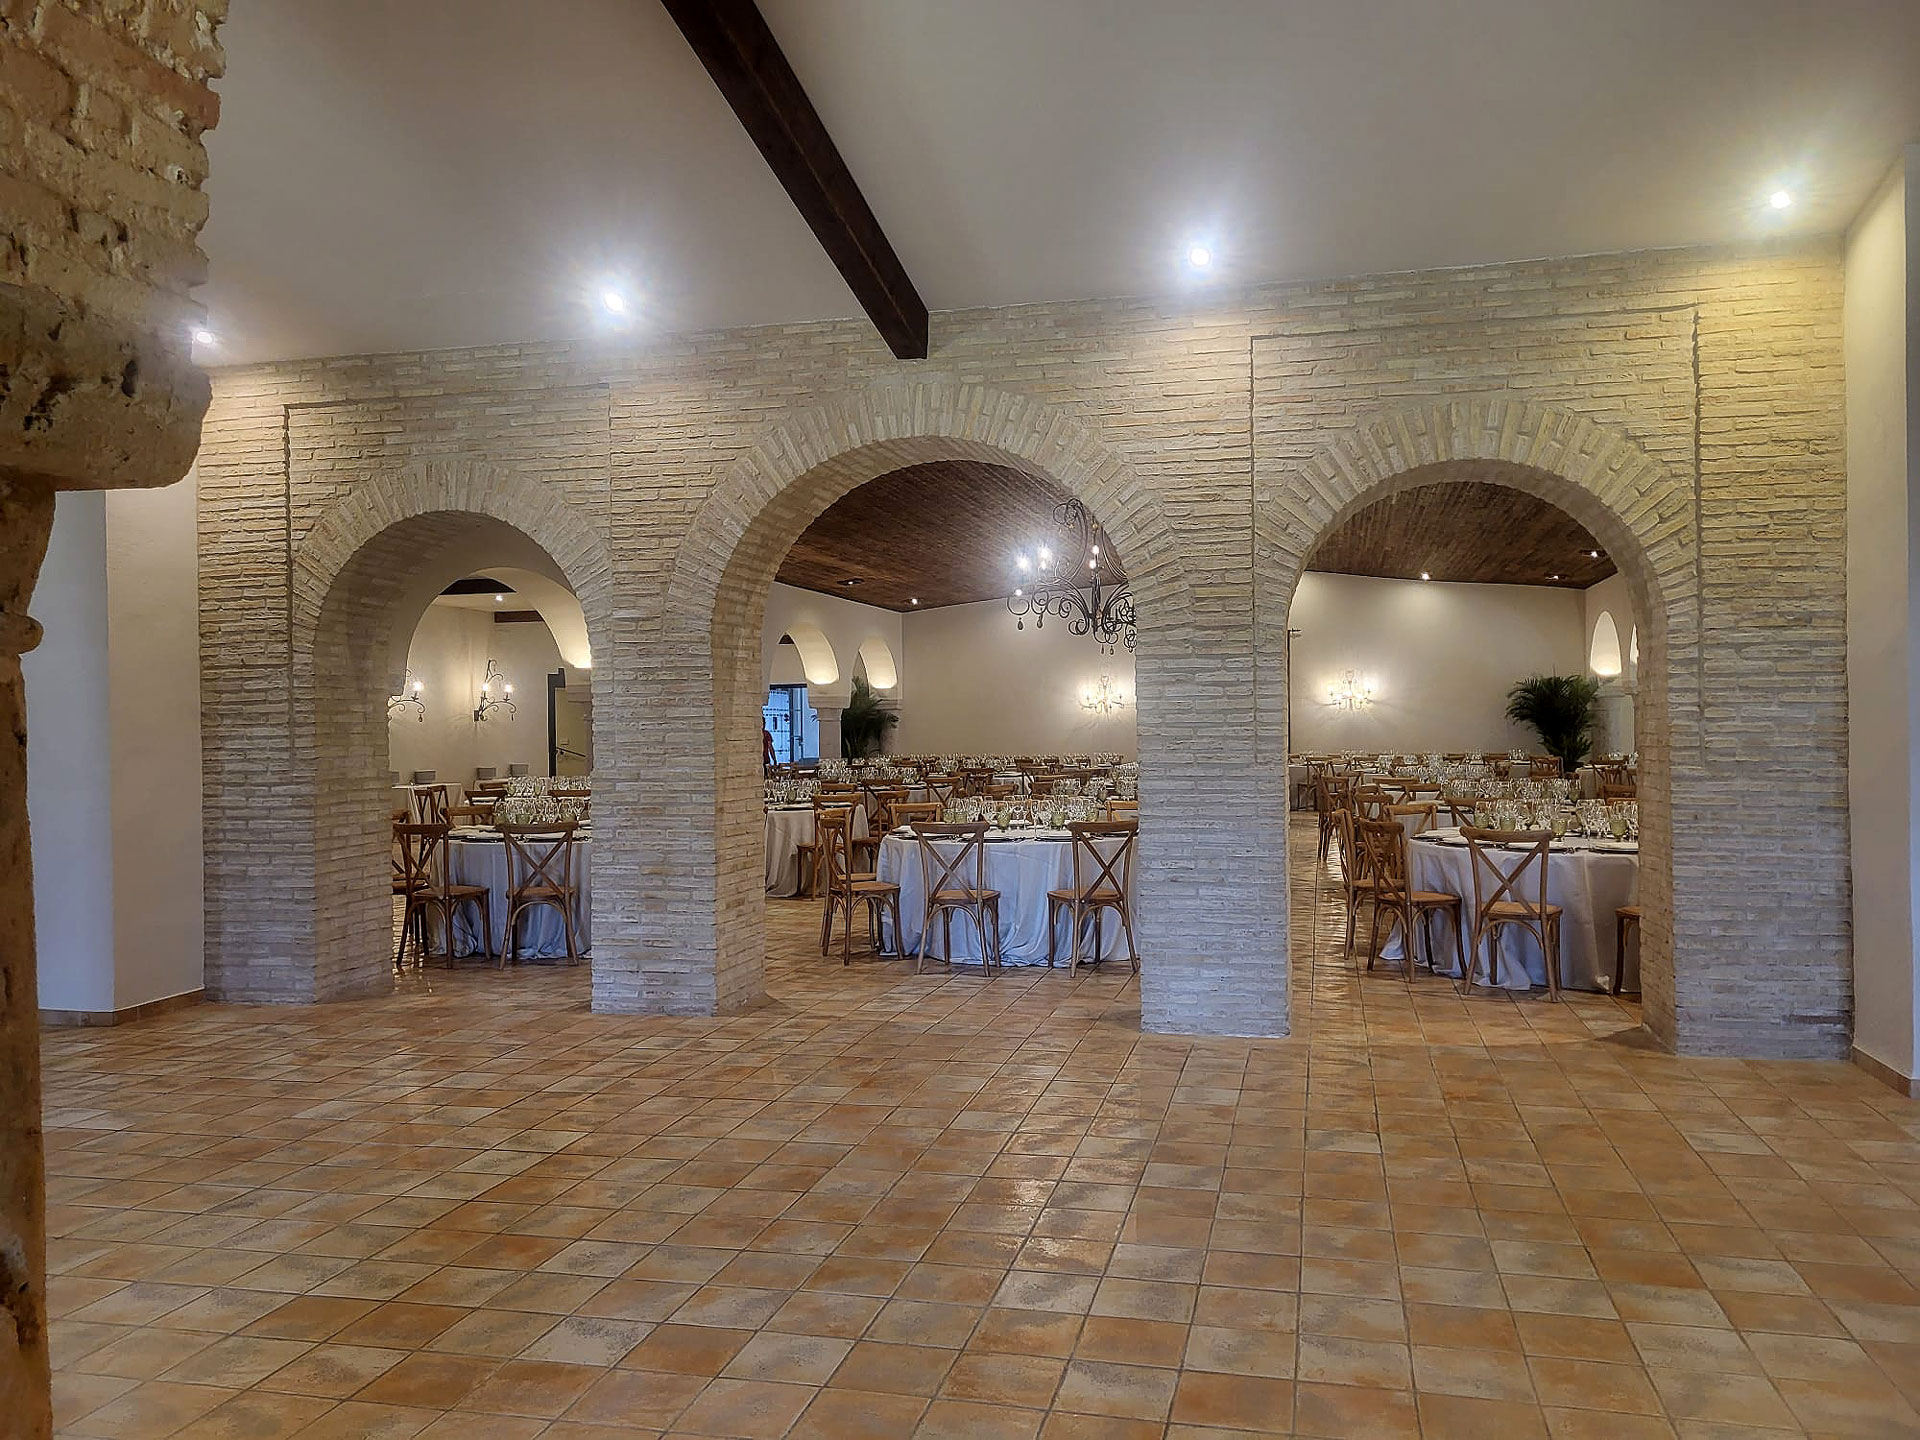 Salón para celebración de bodas de la Hacienda Los Frailes de San Alberto. Salón de la Lastra